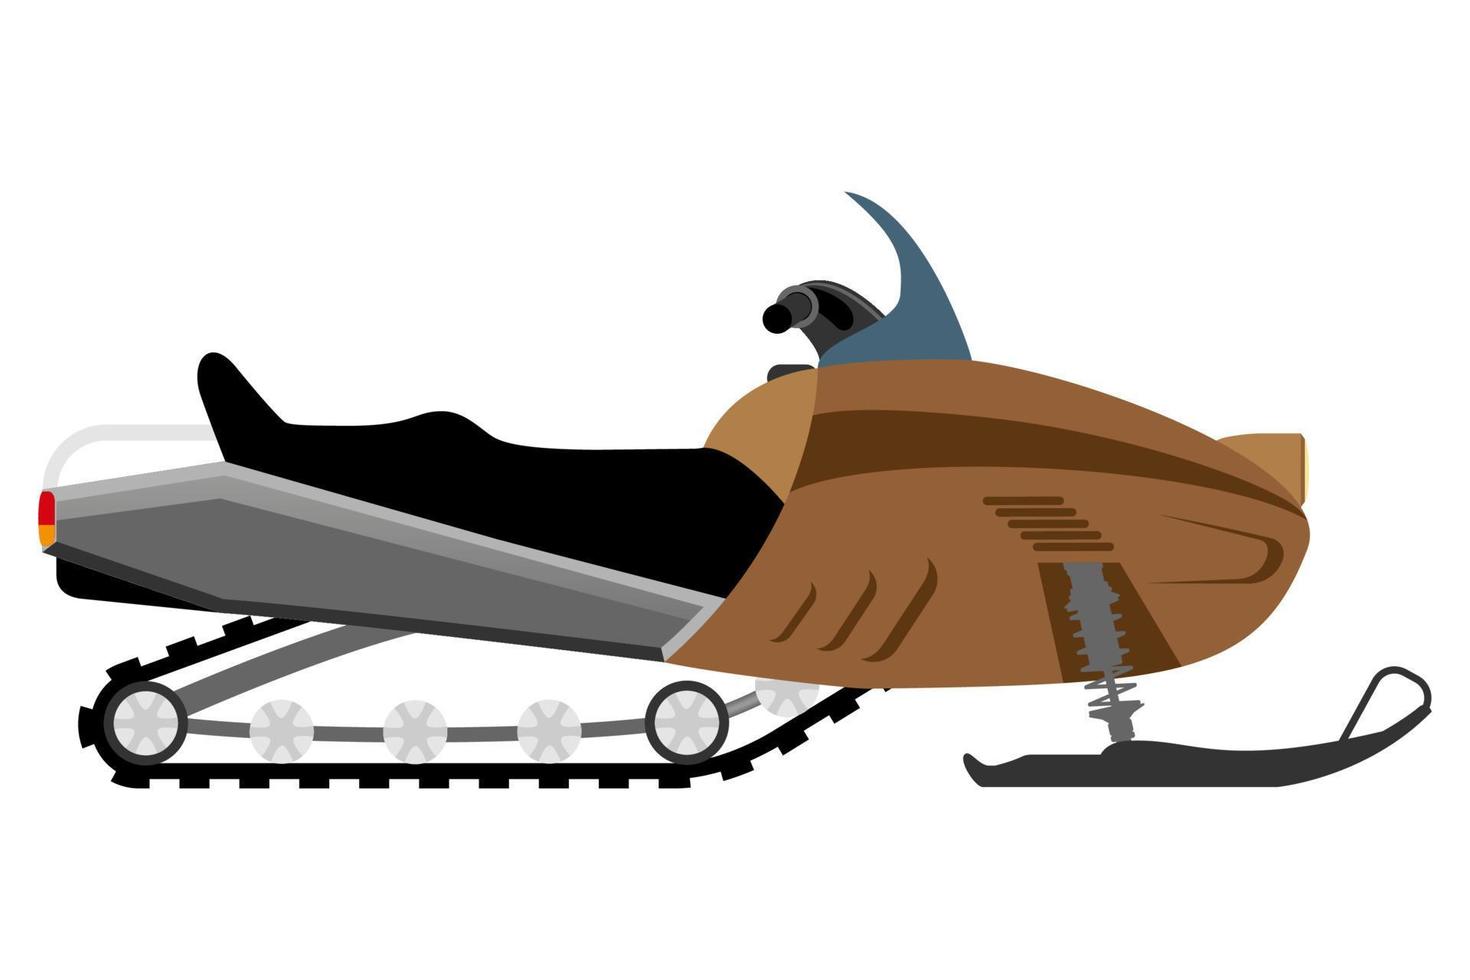 transporte para o transporte de mercadorias ou passageiros ícone plana ilustração vetorial isolada no fundo branco vetor